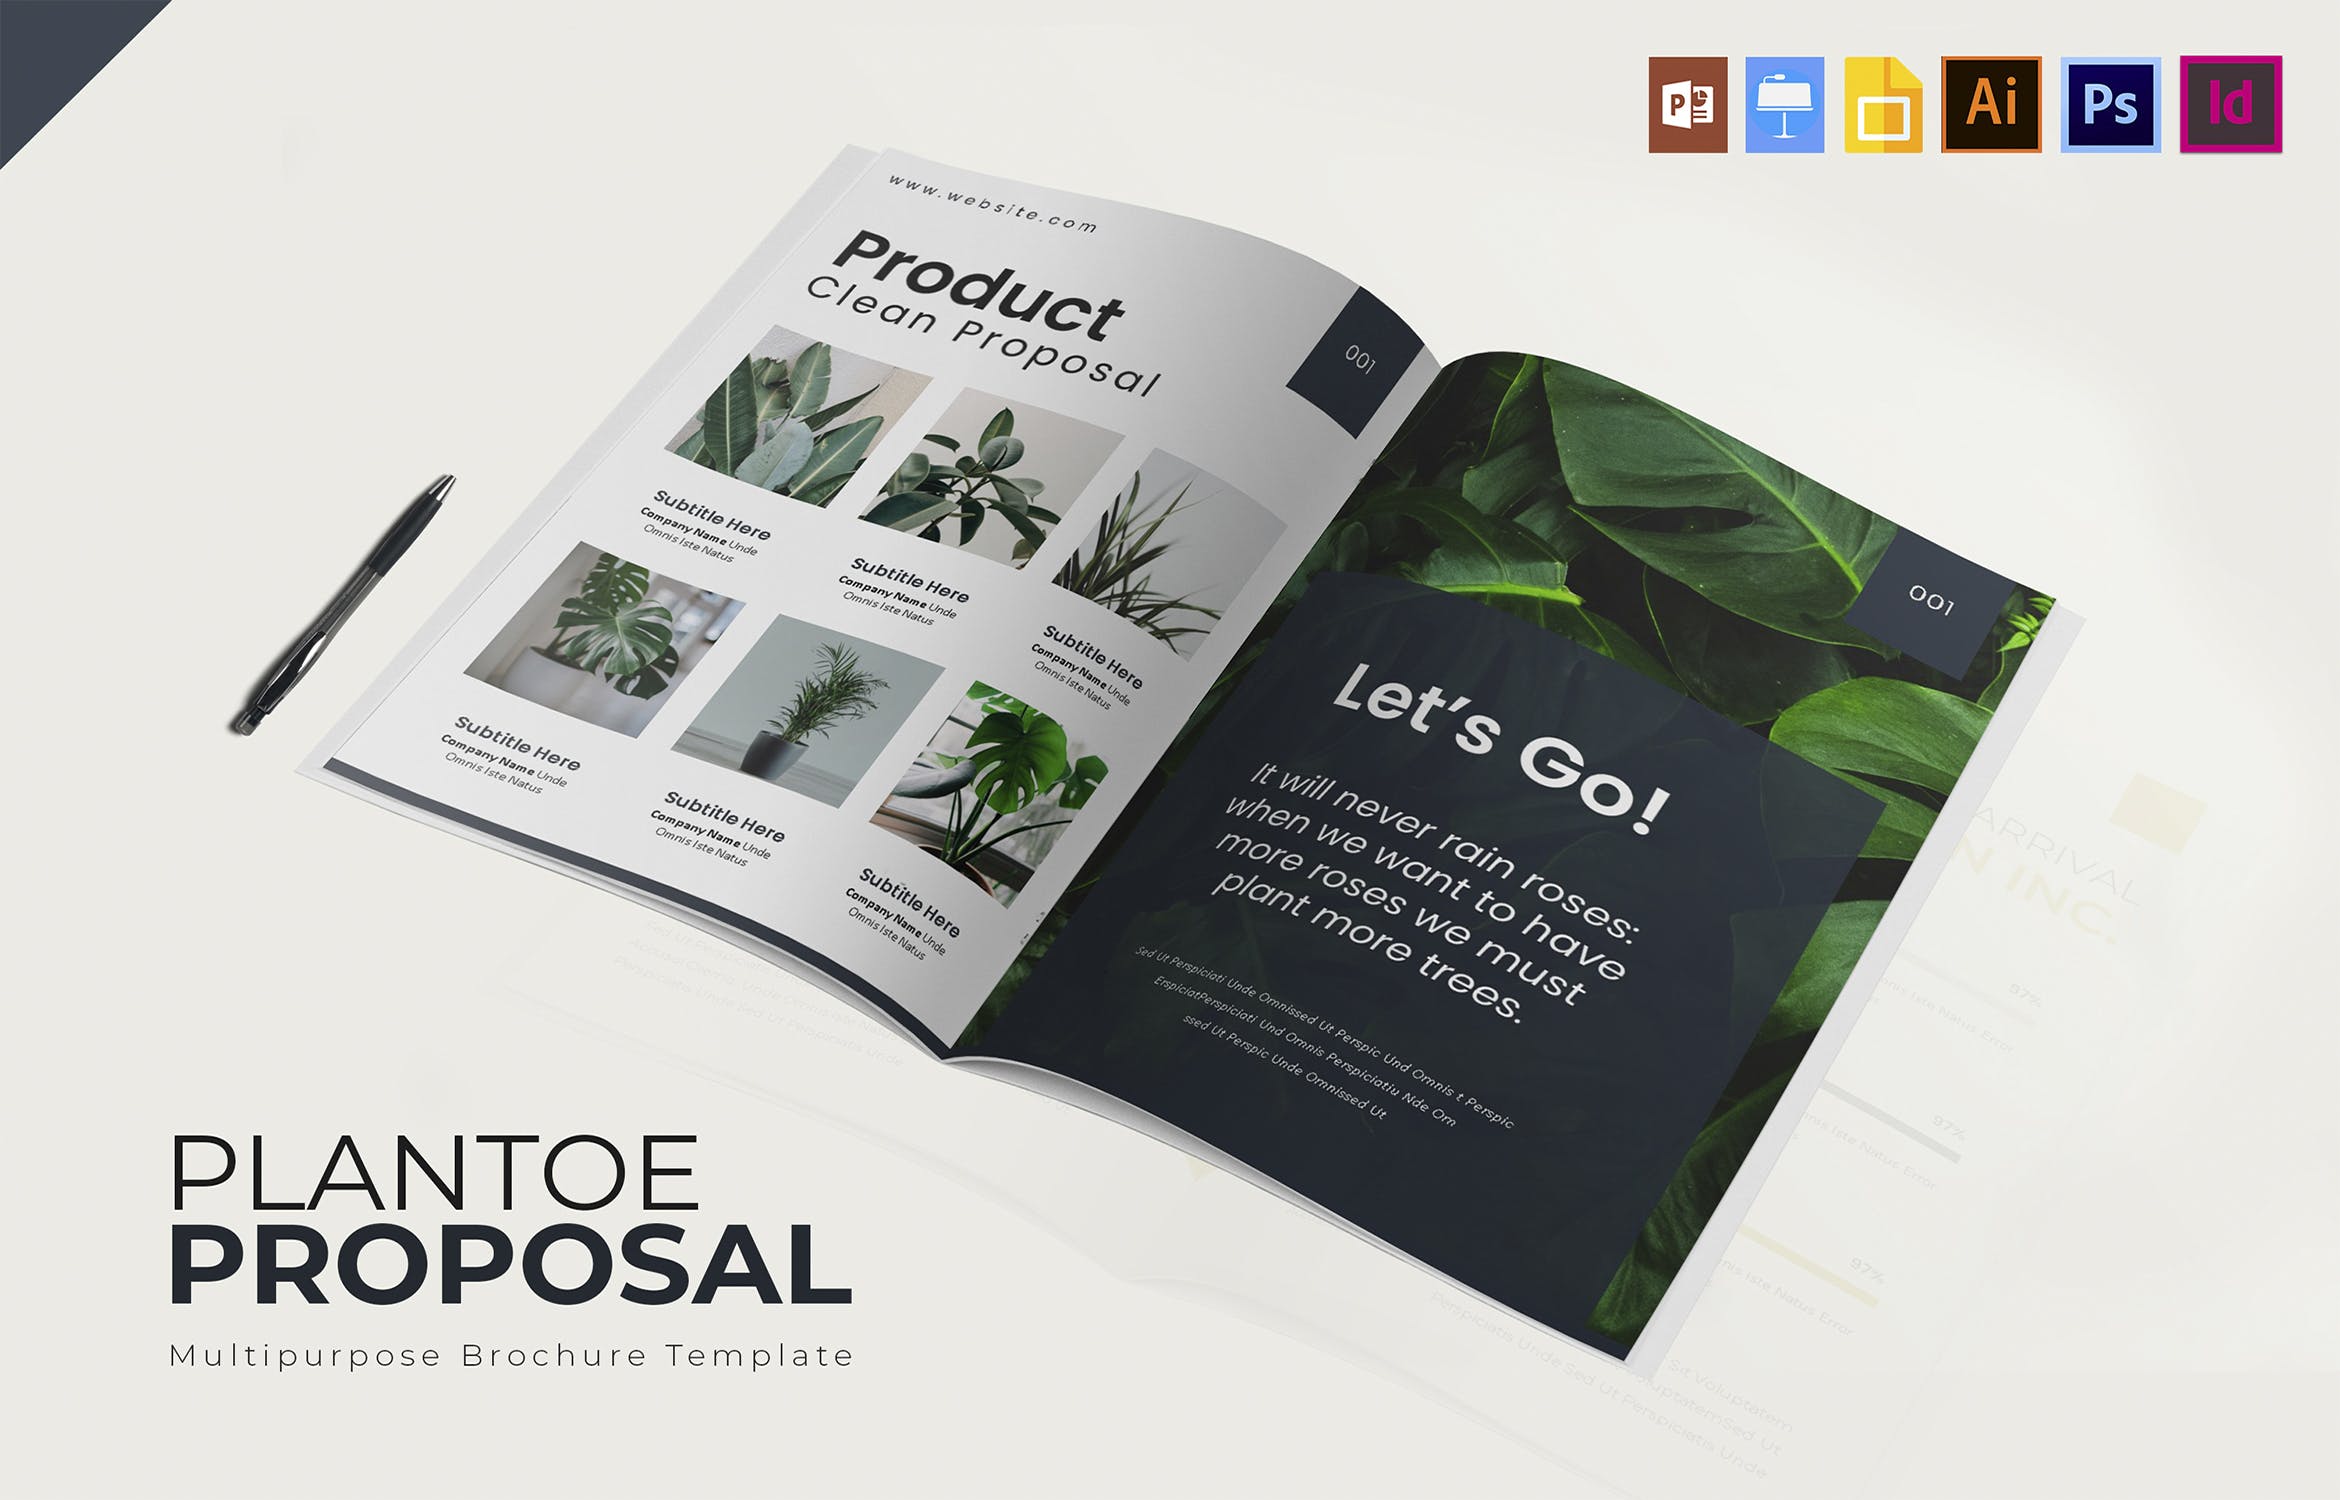 企业业务宣传/产品展示宣传画册设计模板 Plantoe | Brochure插图(2)